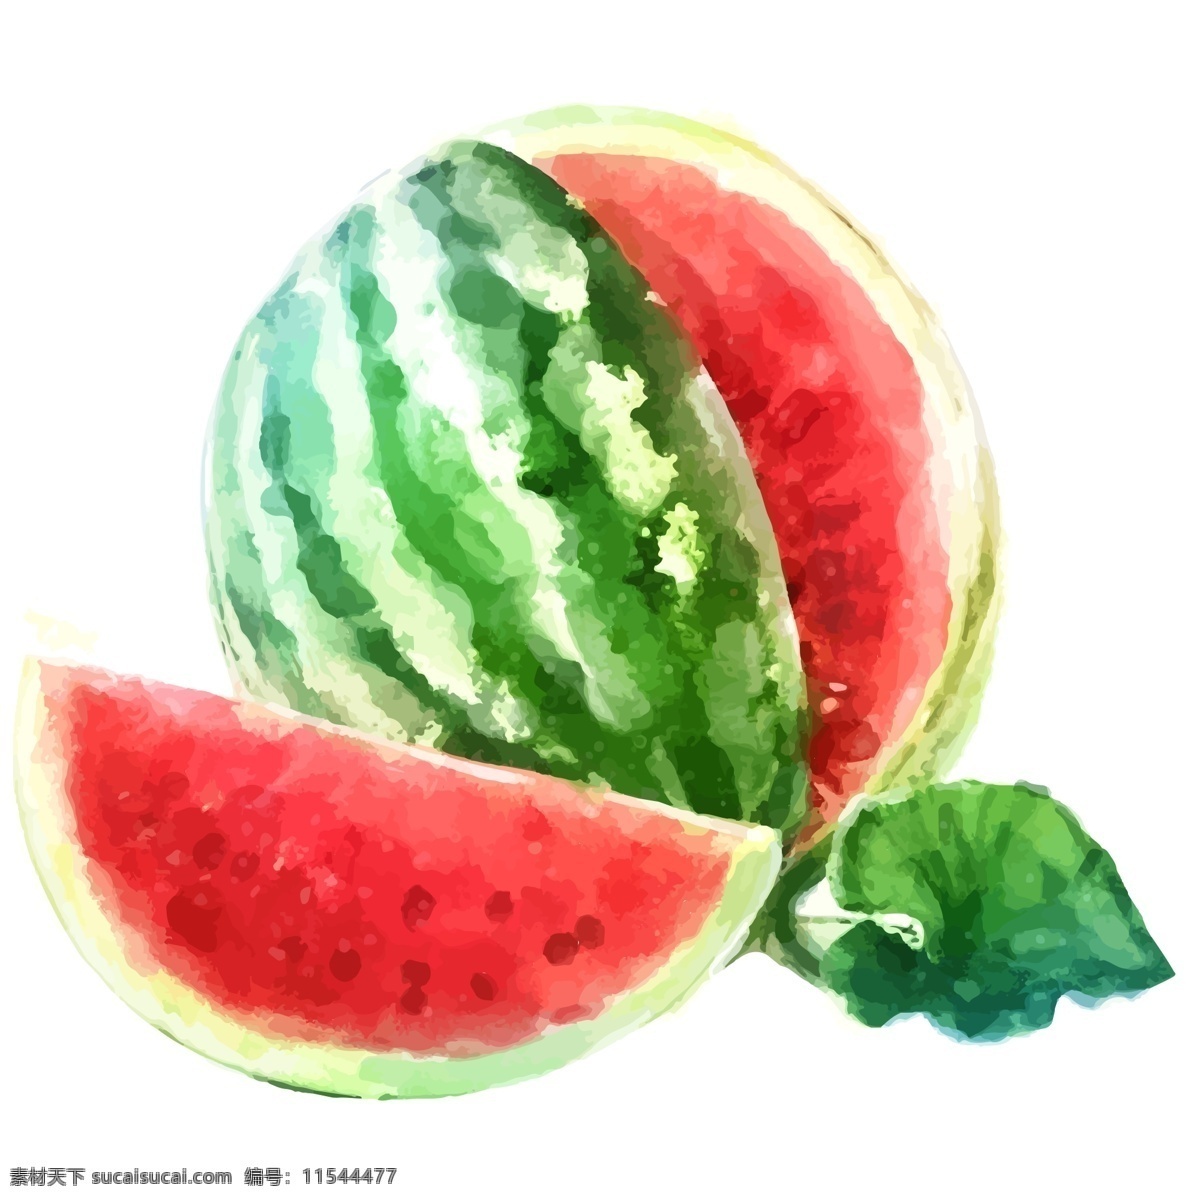 暑假 到来 夏季 水彩 西瓜 暑假到来 夏天来啦 夏天 水果 度假 美味 美食 夏季水果